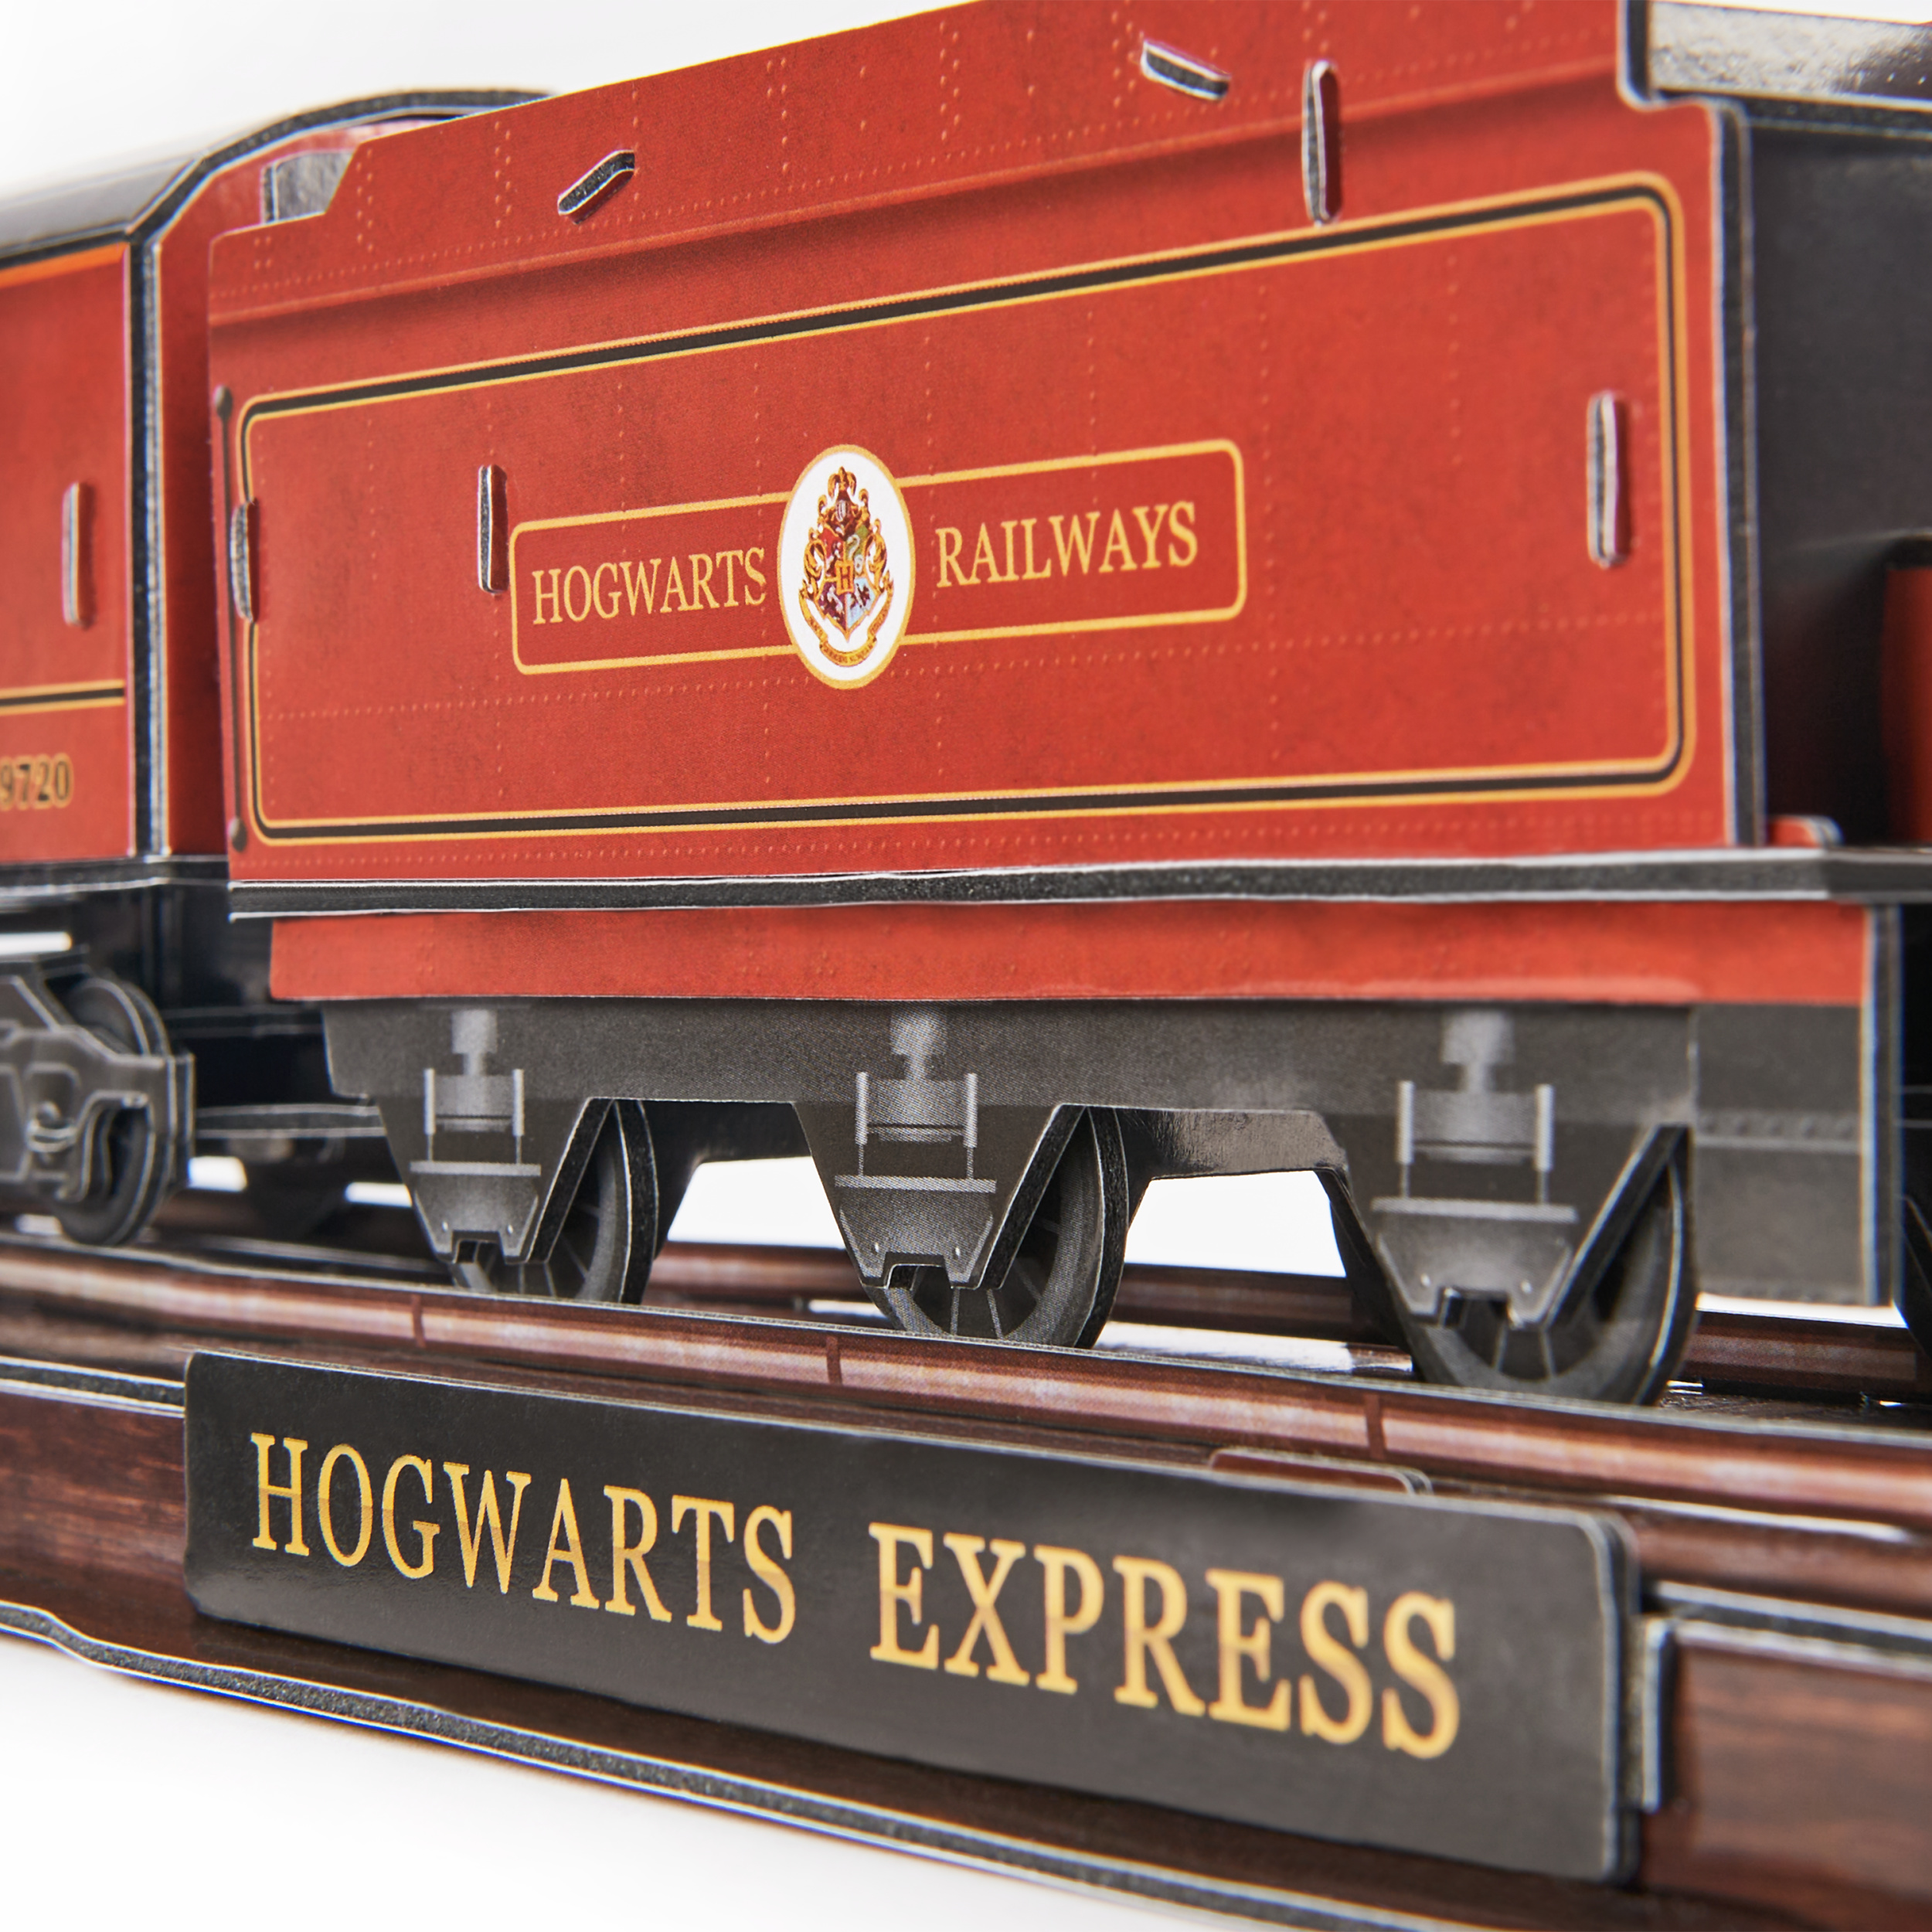 4D puzzle Harry Potter: Rokfortský expres